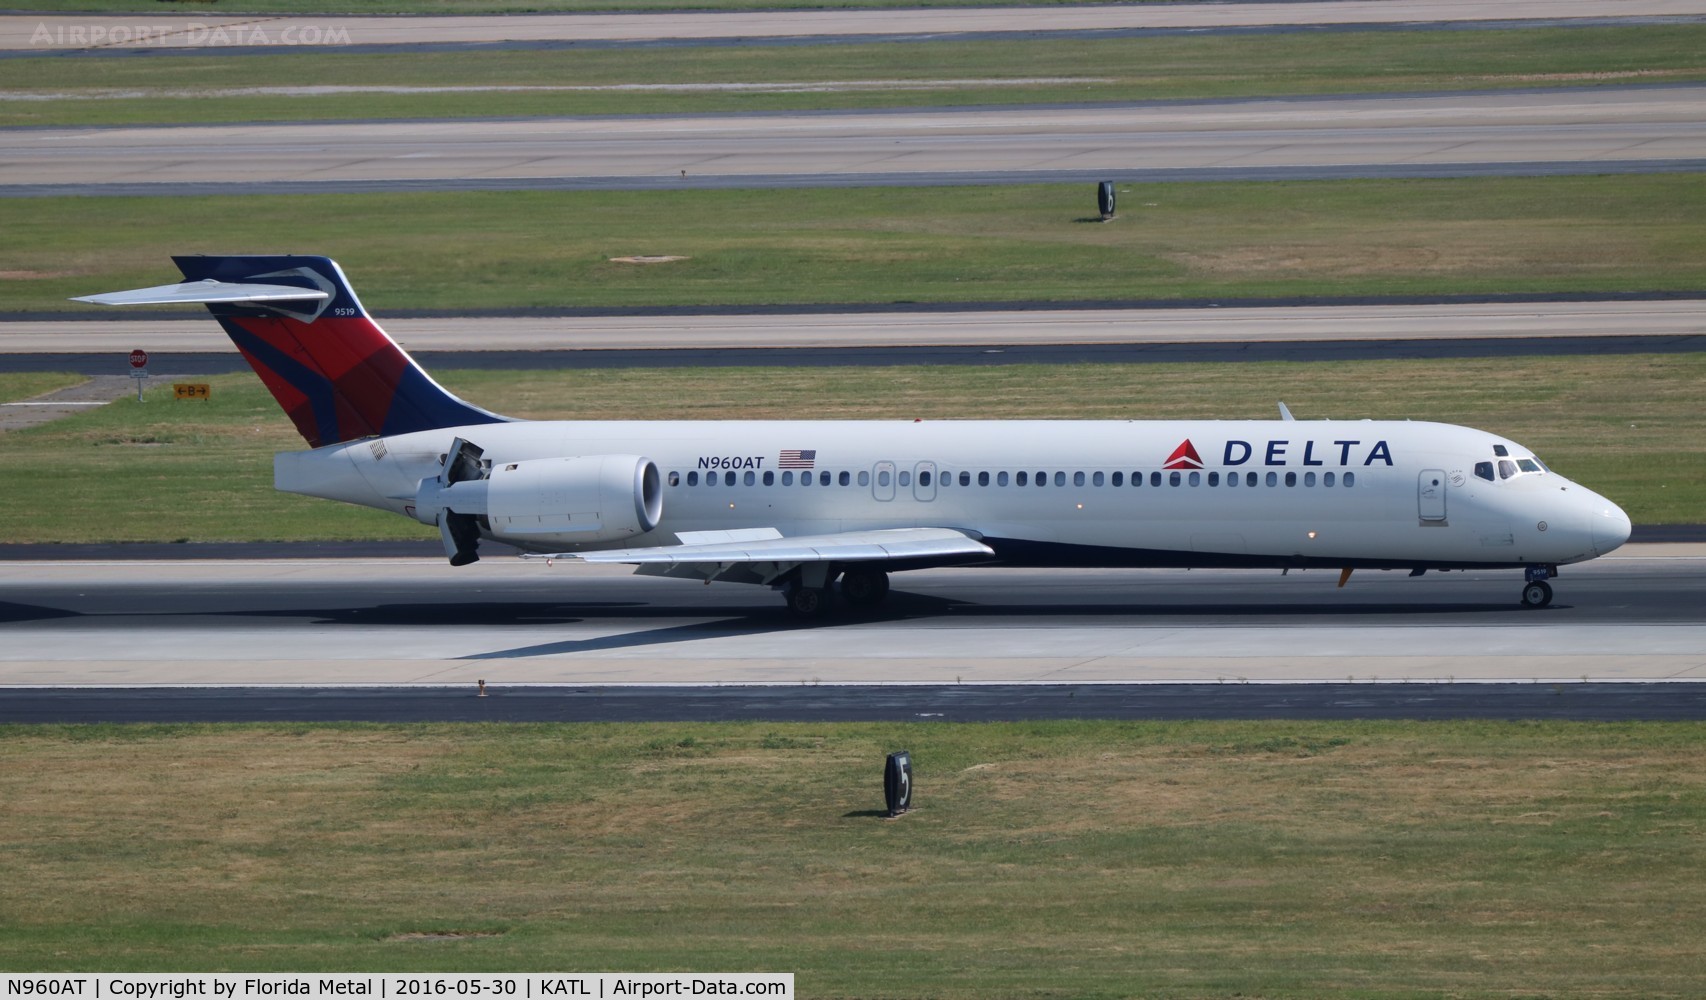 N960AT, 2001 Boeing 717-200 C/N 55022, Delta